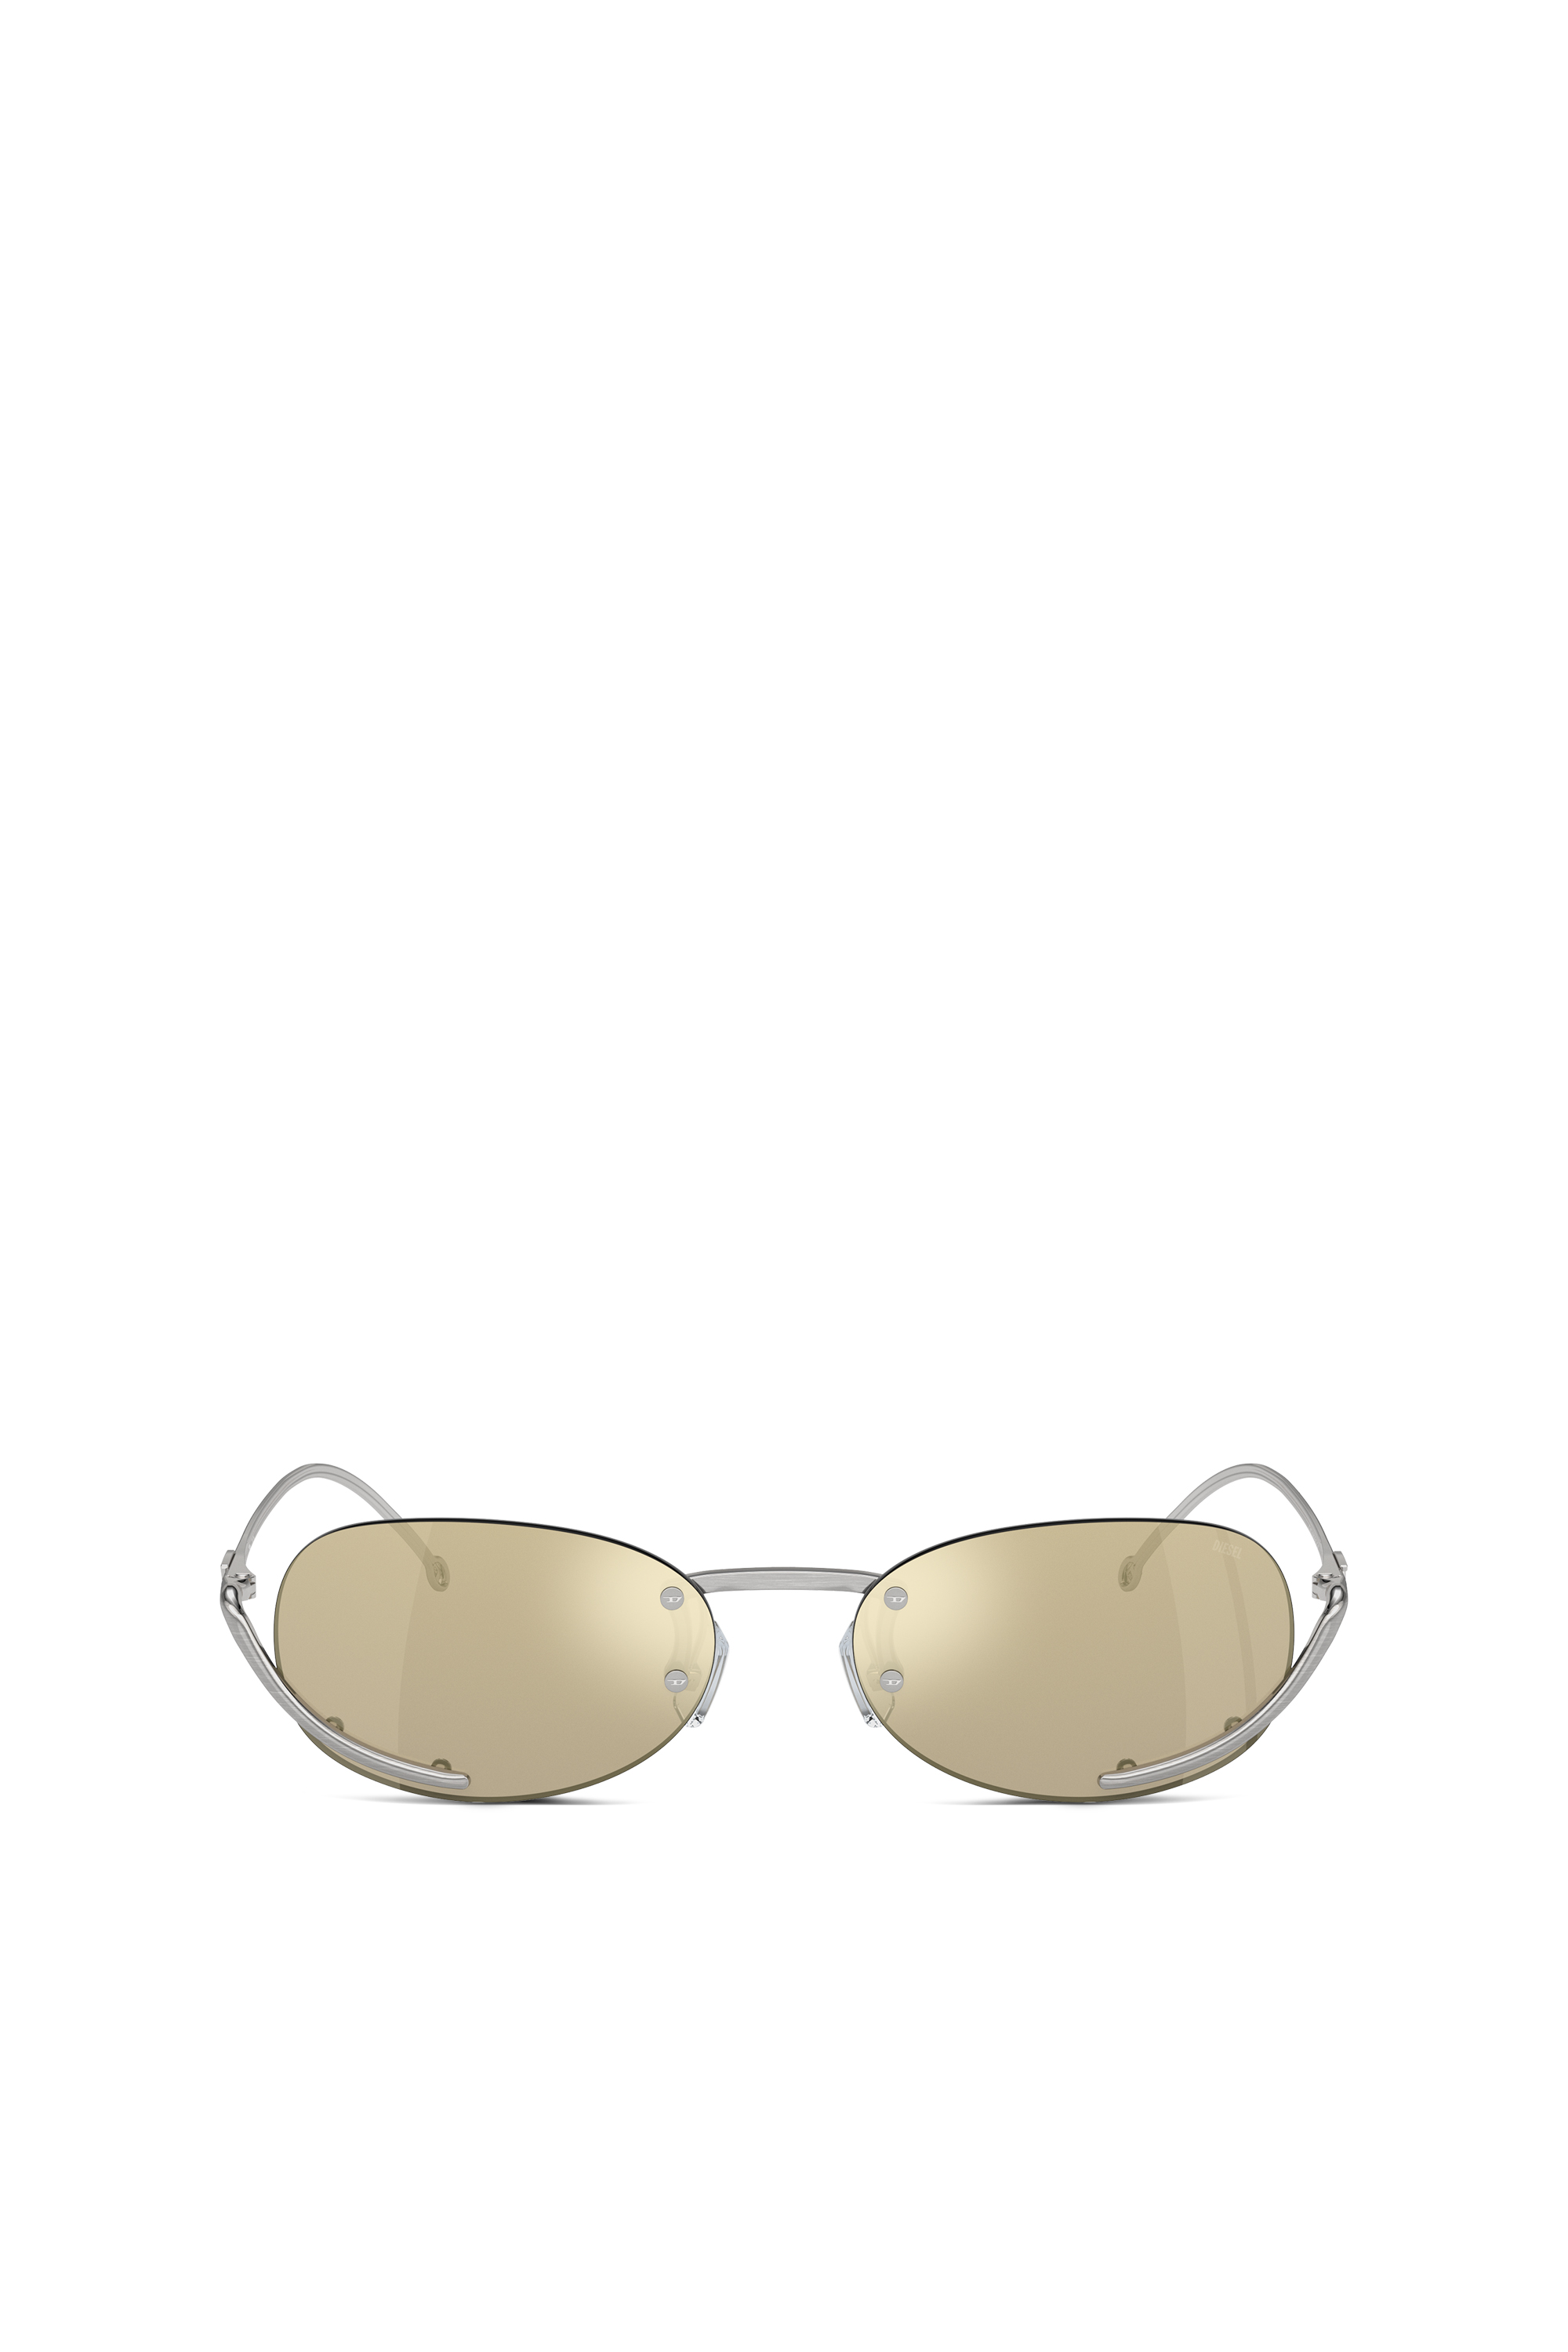 Diesel - Ovaler Modell Brille - Sonnenbrille - Unisex - Gelb